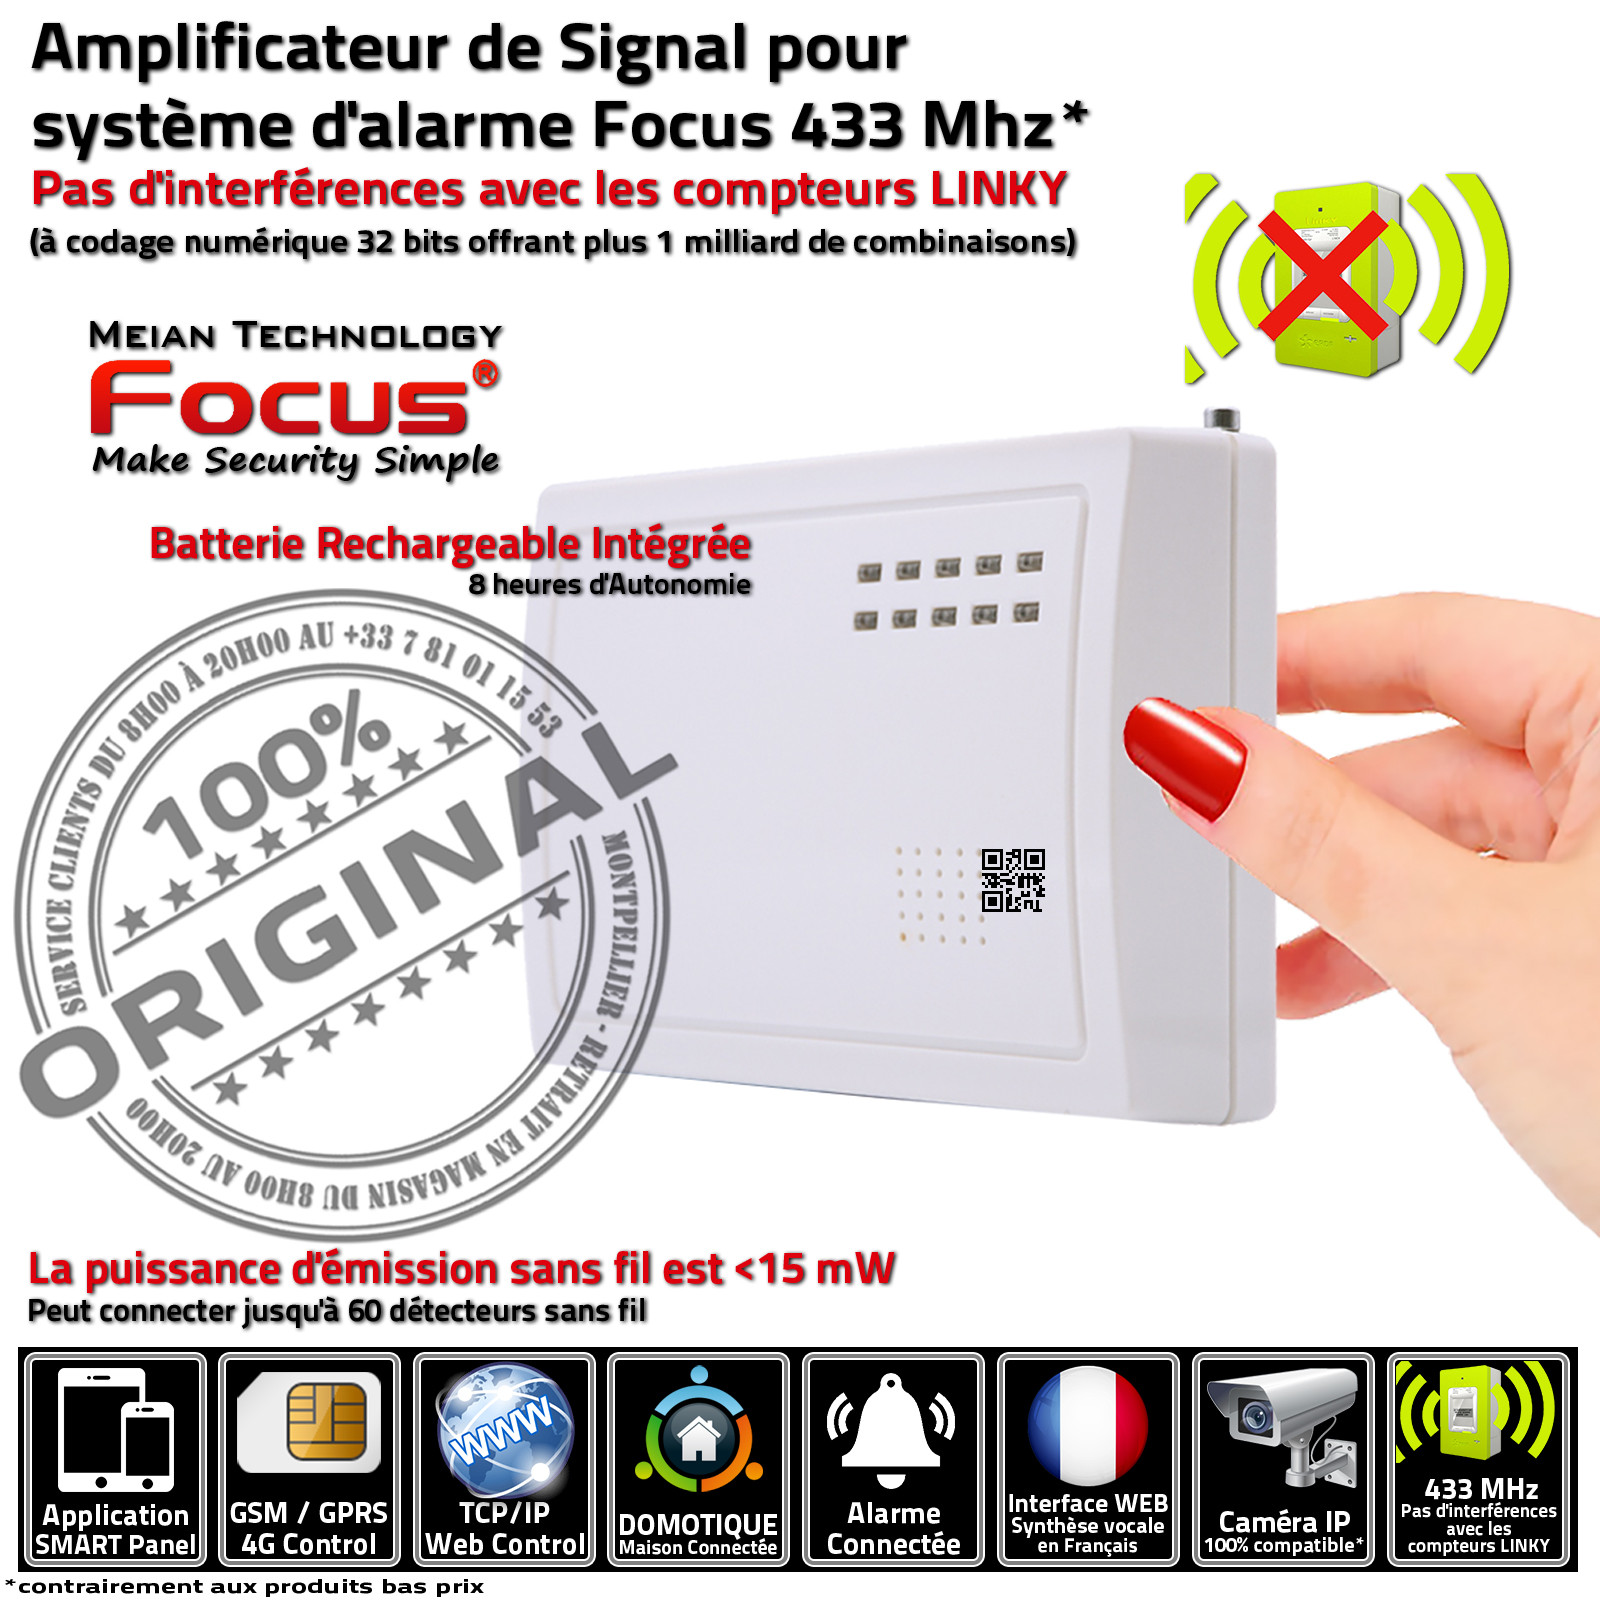 Entrée analogique de haute qualité pour une réception de signal précise PB-205R Alarme Meian 433 MHz